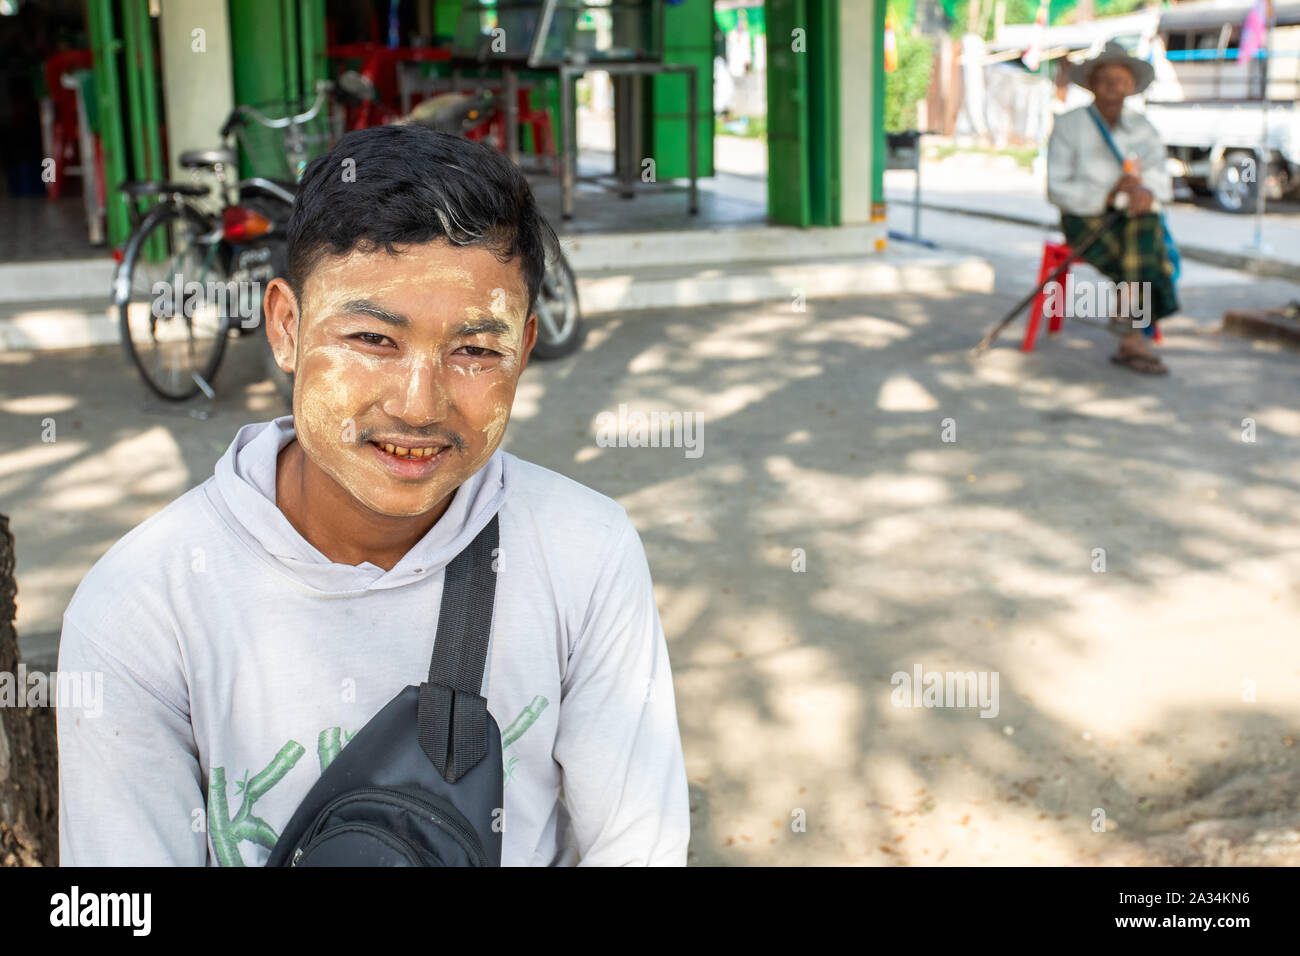 Retrato del joven con máscara de polvo birmano tradicional en la cara. Foto de stock